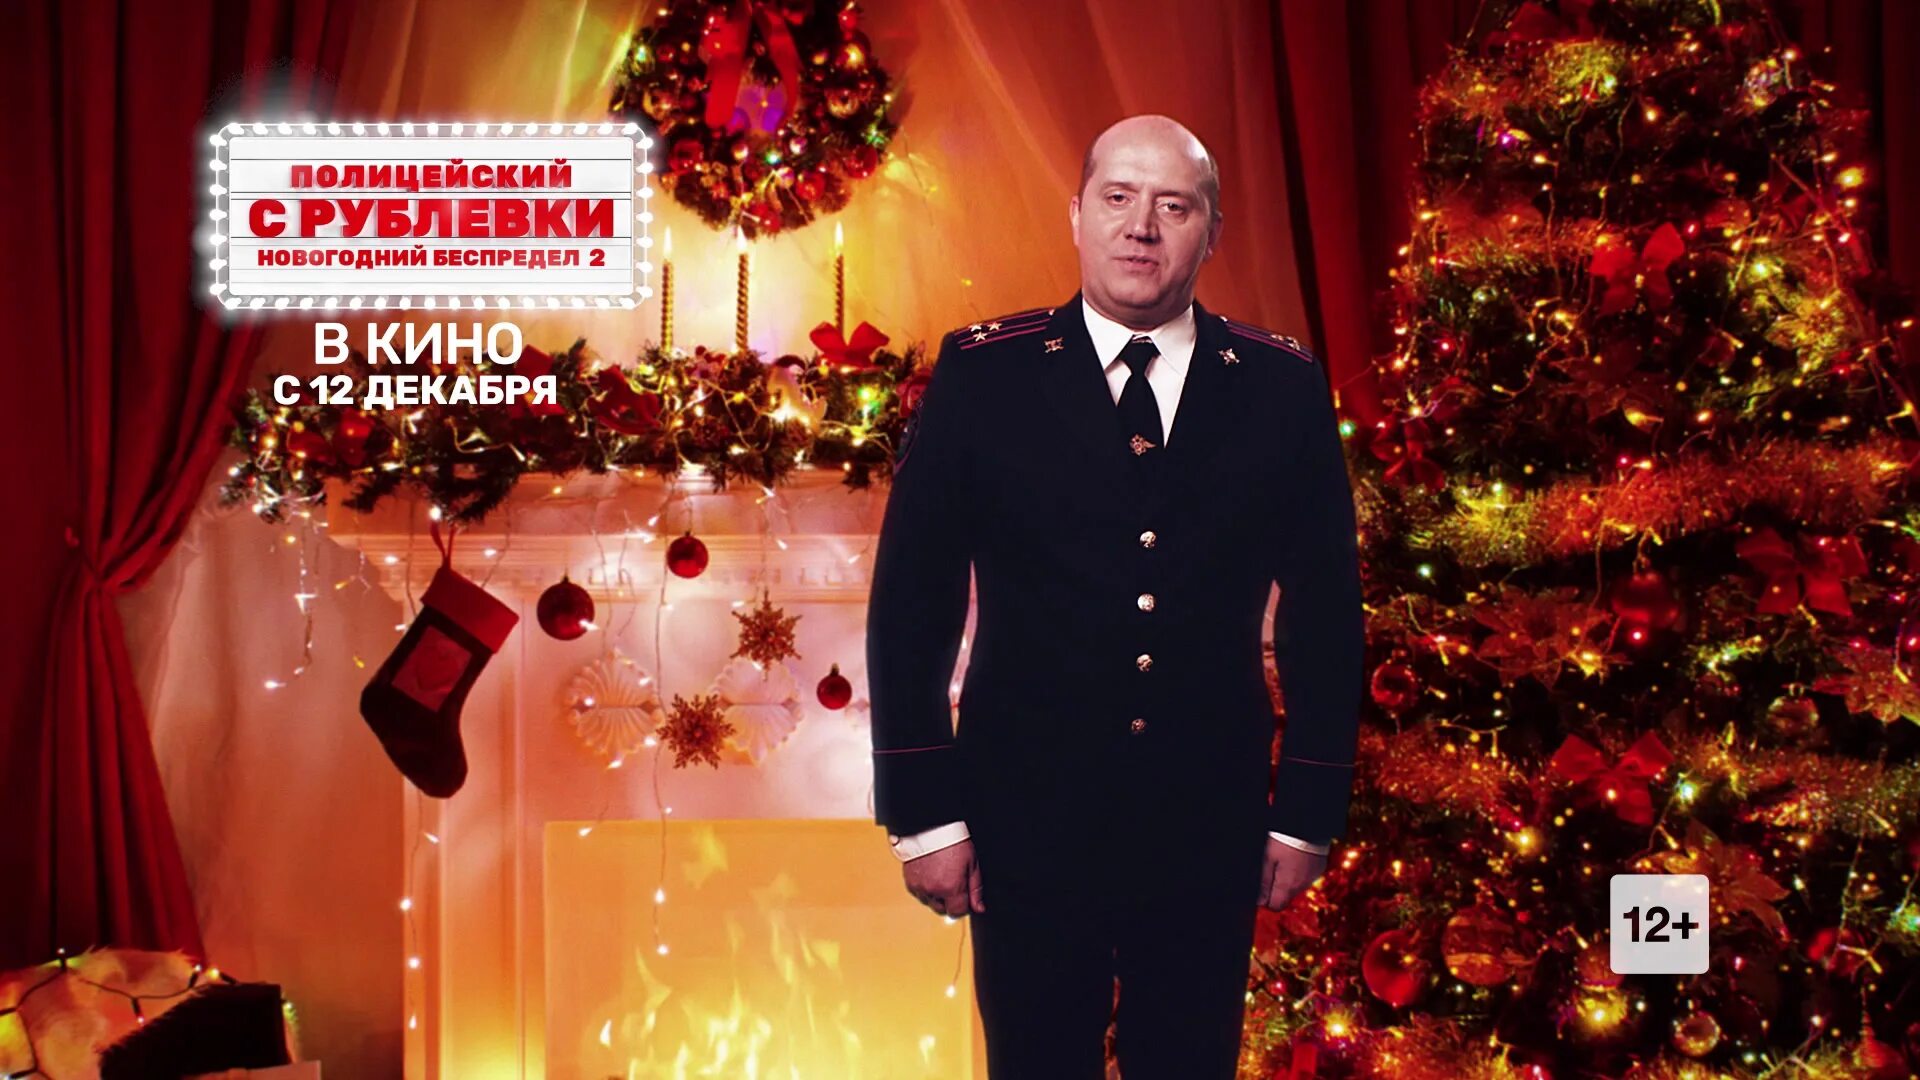 Новогодний беспредел на телефон. Полицейский с рублёвки новогодний беспредел Яковлев.